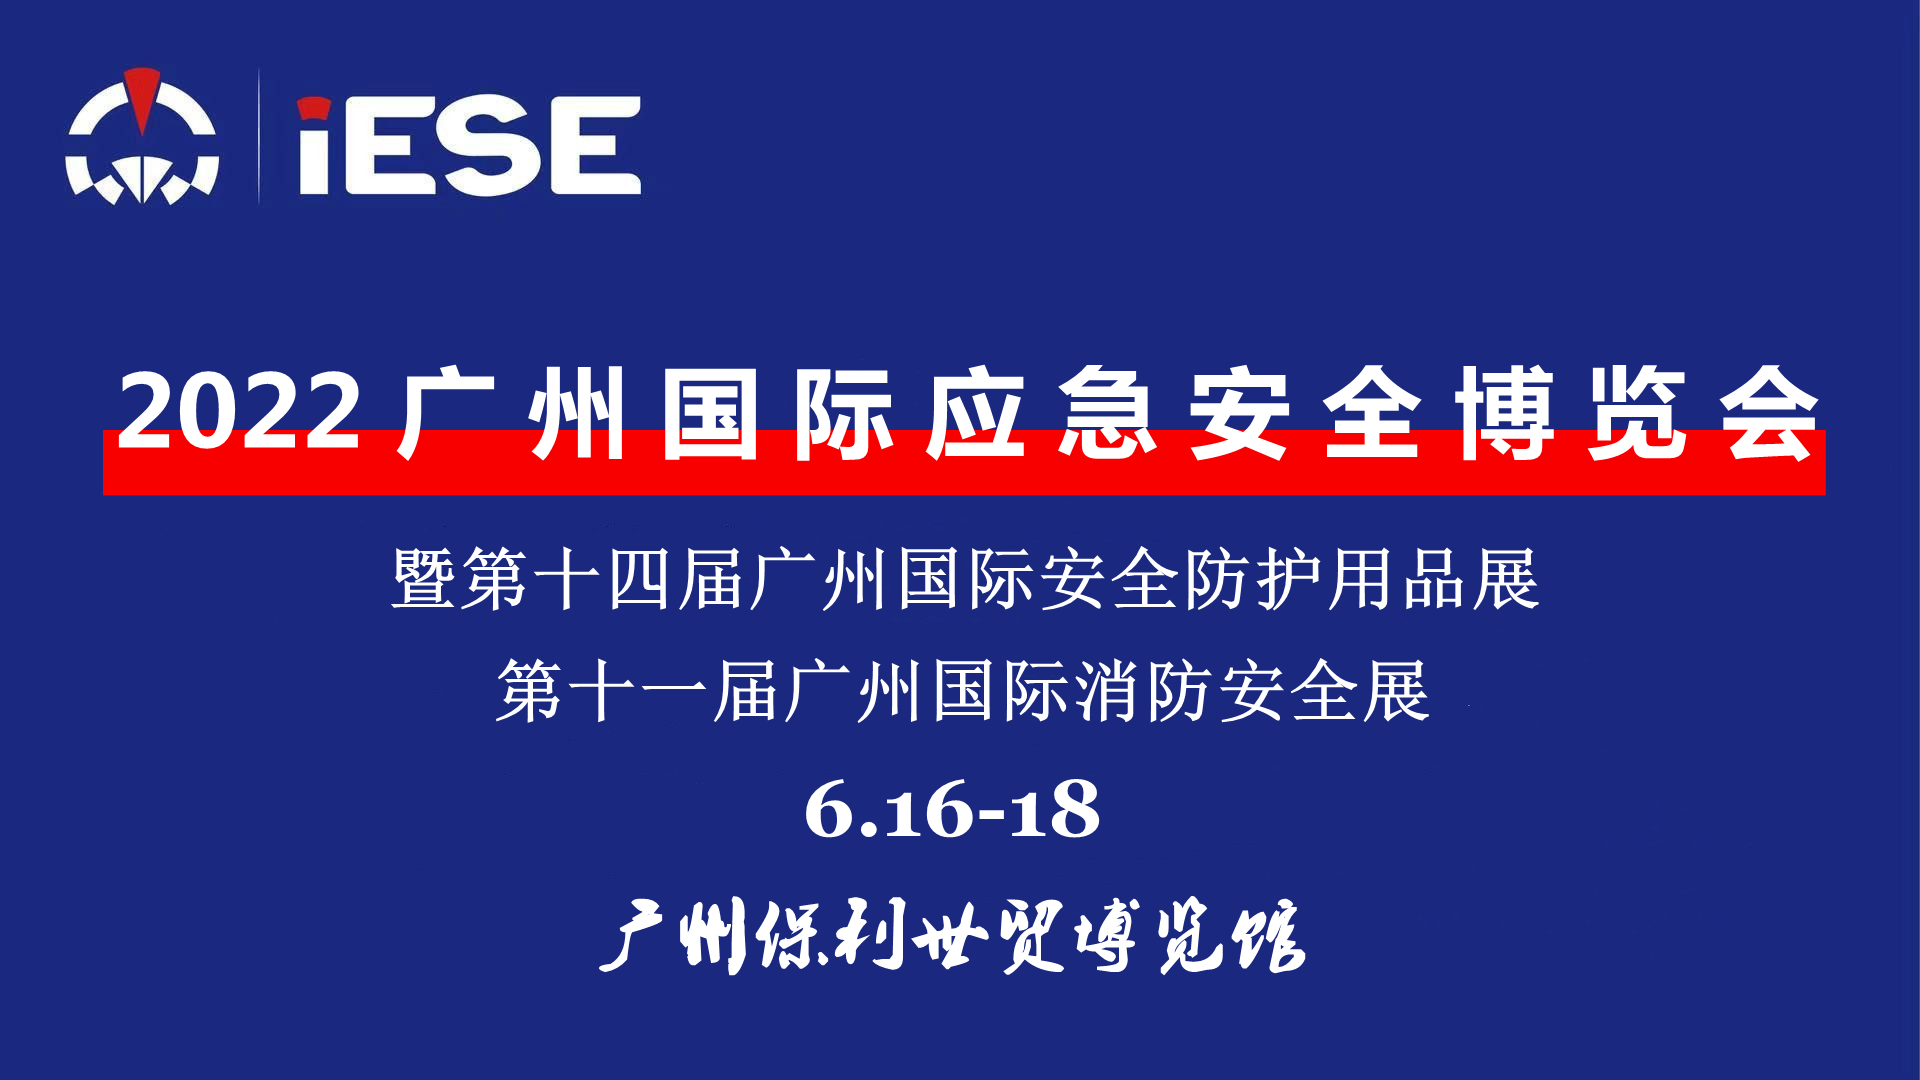 2022广州国际应急安全博览会（IESE）定于6月16—18举行